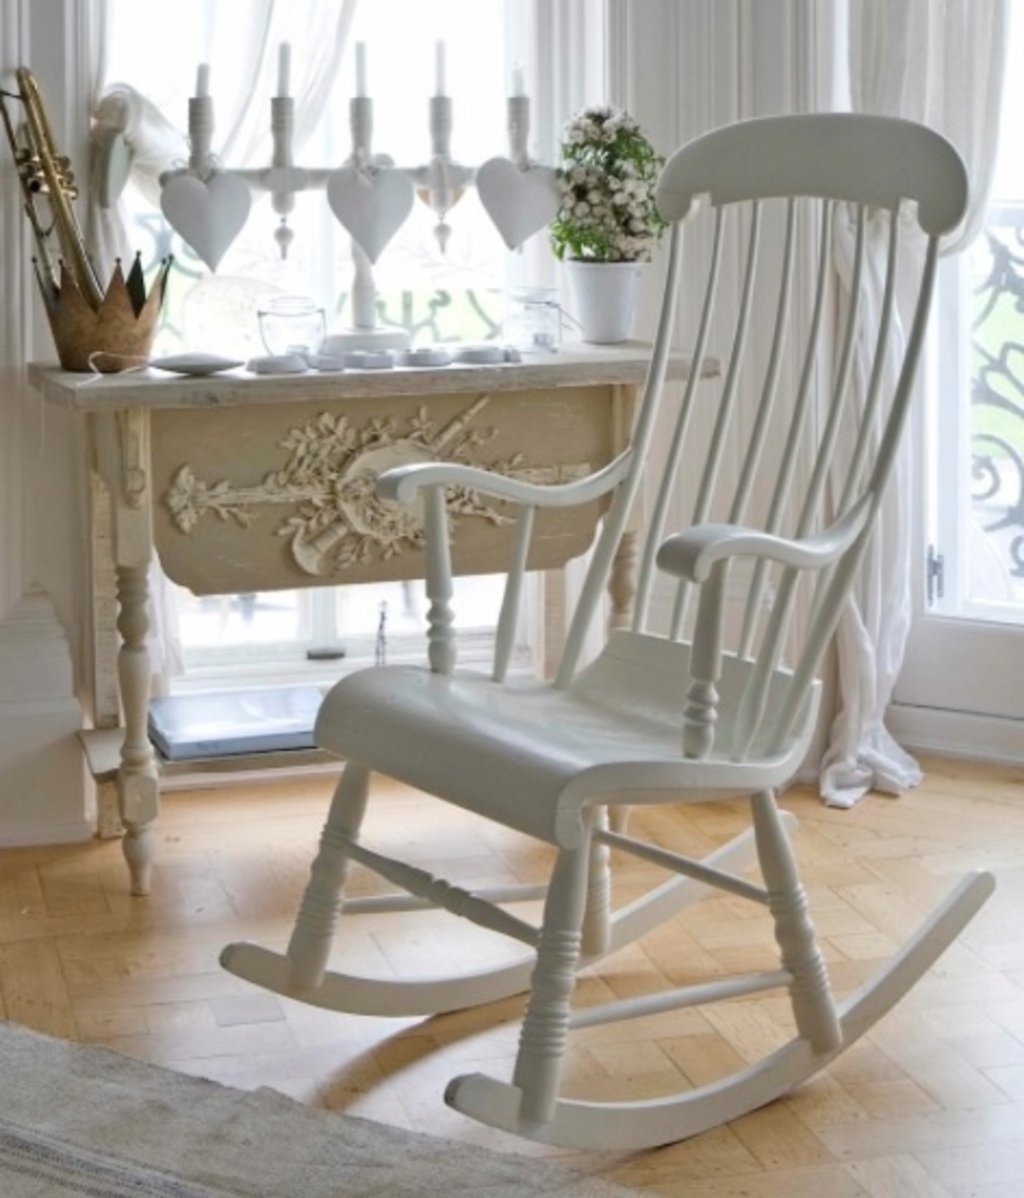 Nursery wooden rocking chair